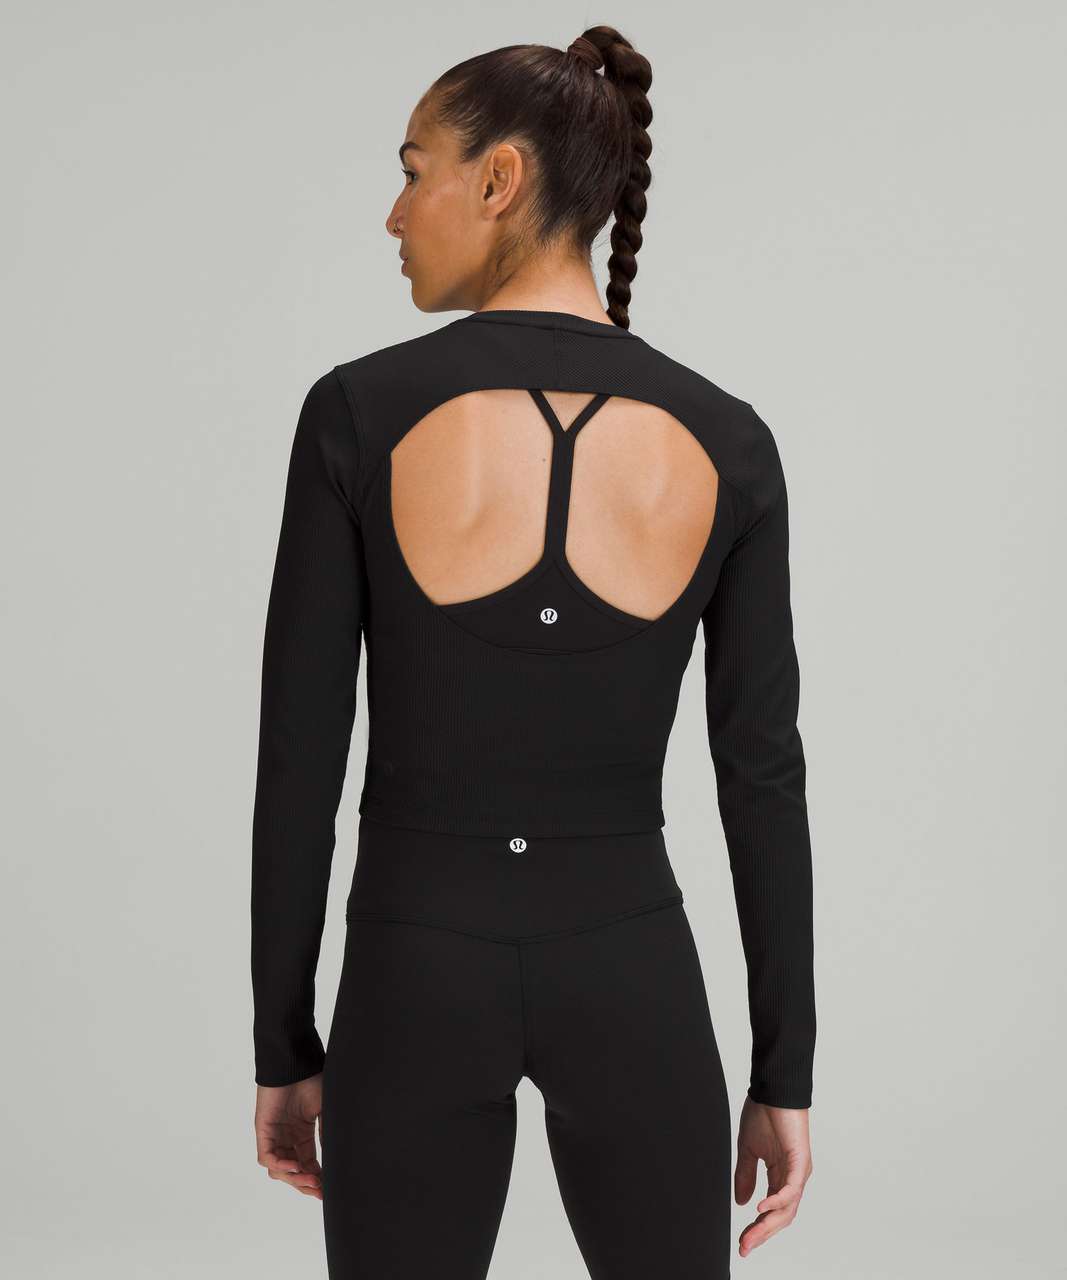 https://storage.googleapis.com/lulu-fanatics/product/74712/1280/lululemon-ribbed-open-back-yoga-long-sleeve-shirt-black-0001-398670.jpg